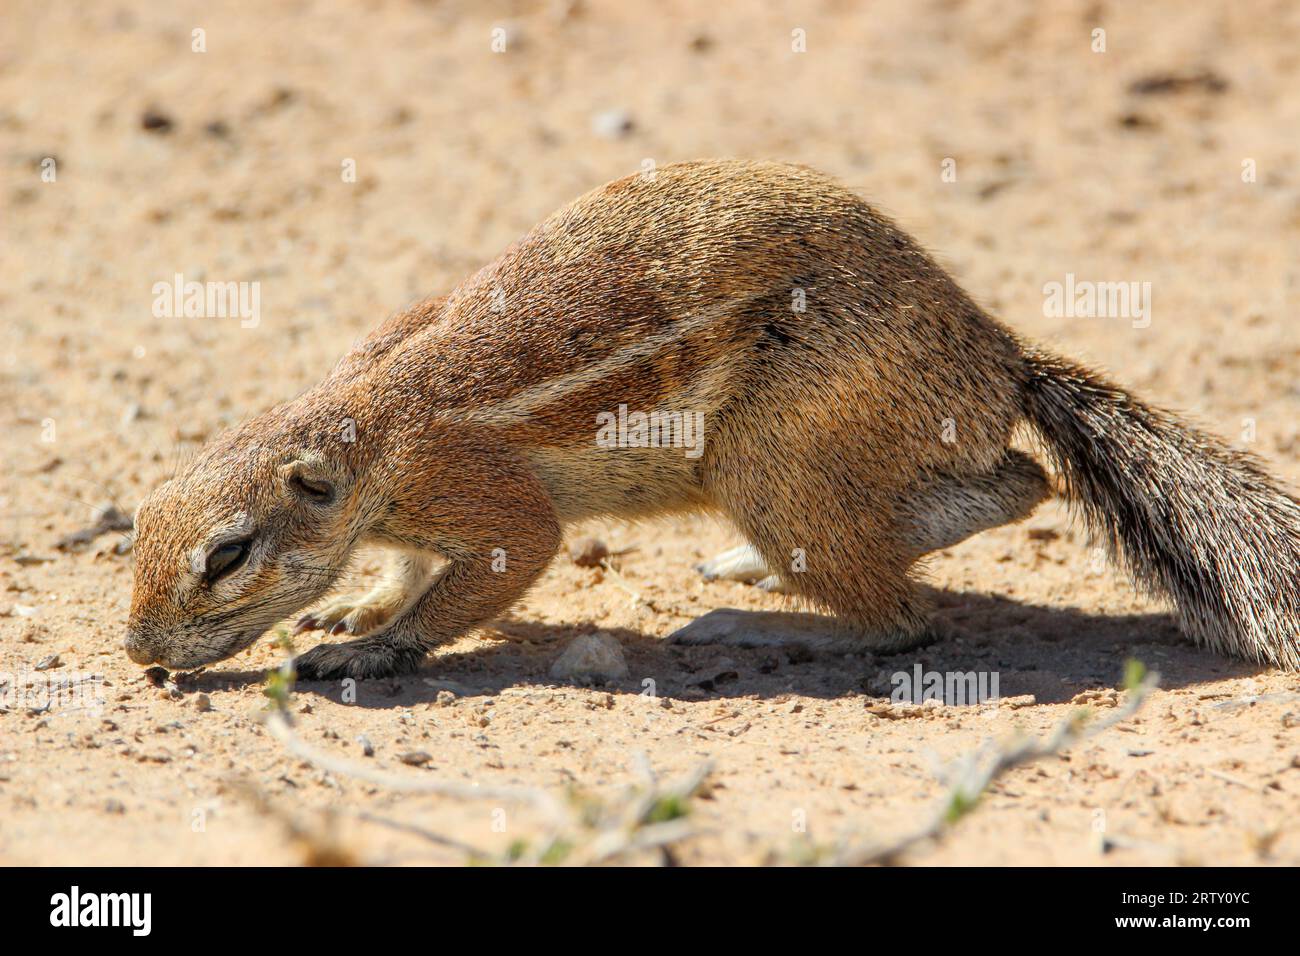 Kap Ground Eichhörnchen (Geoscirus inauris), Kgalagadi, Kalahari, Südafrika Stockfoto